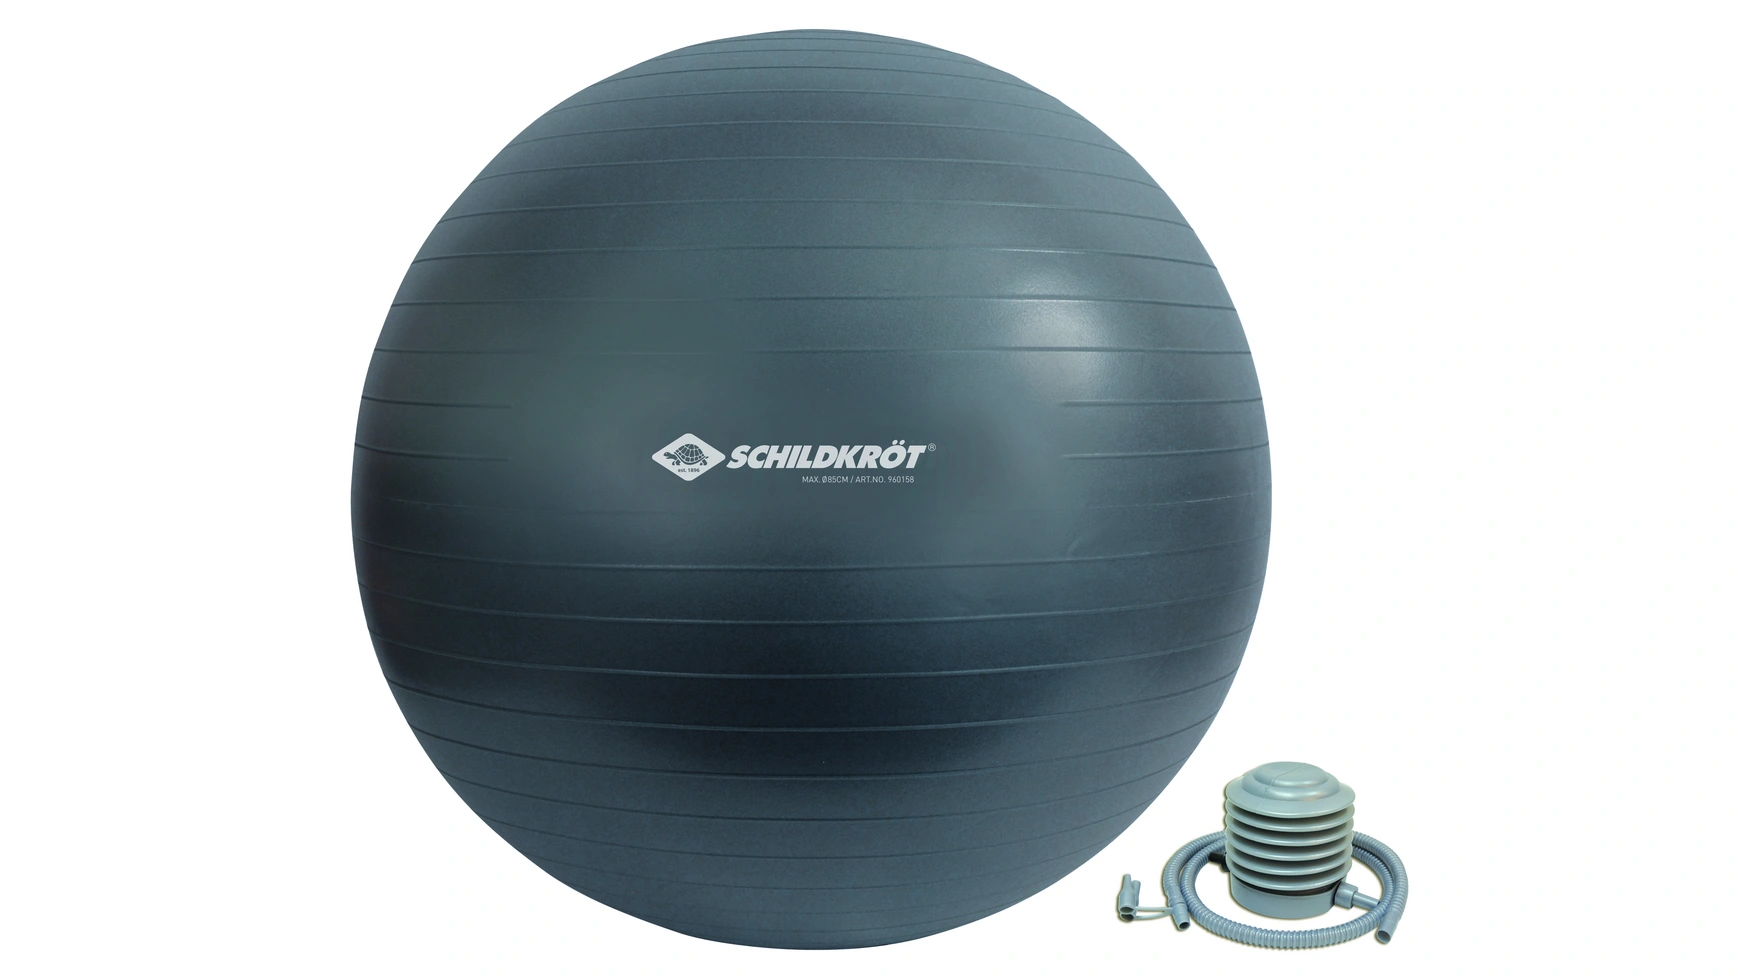 Schildkröt Fitness Мяч для упражнений 85 см, без фталатов, с шариковым насосом, антрацит высококачественная пенополиуретановая базовая веревка для тенниса тренировочное оборудование для начинающих тренировочное оборудовани